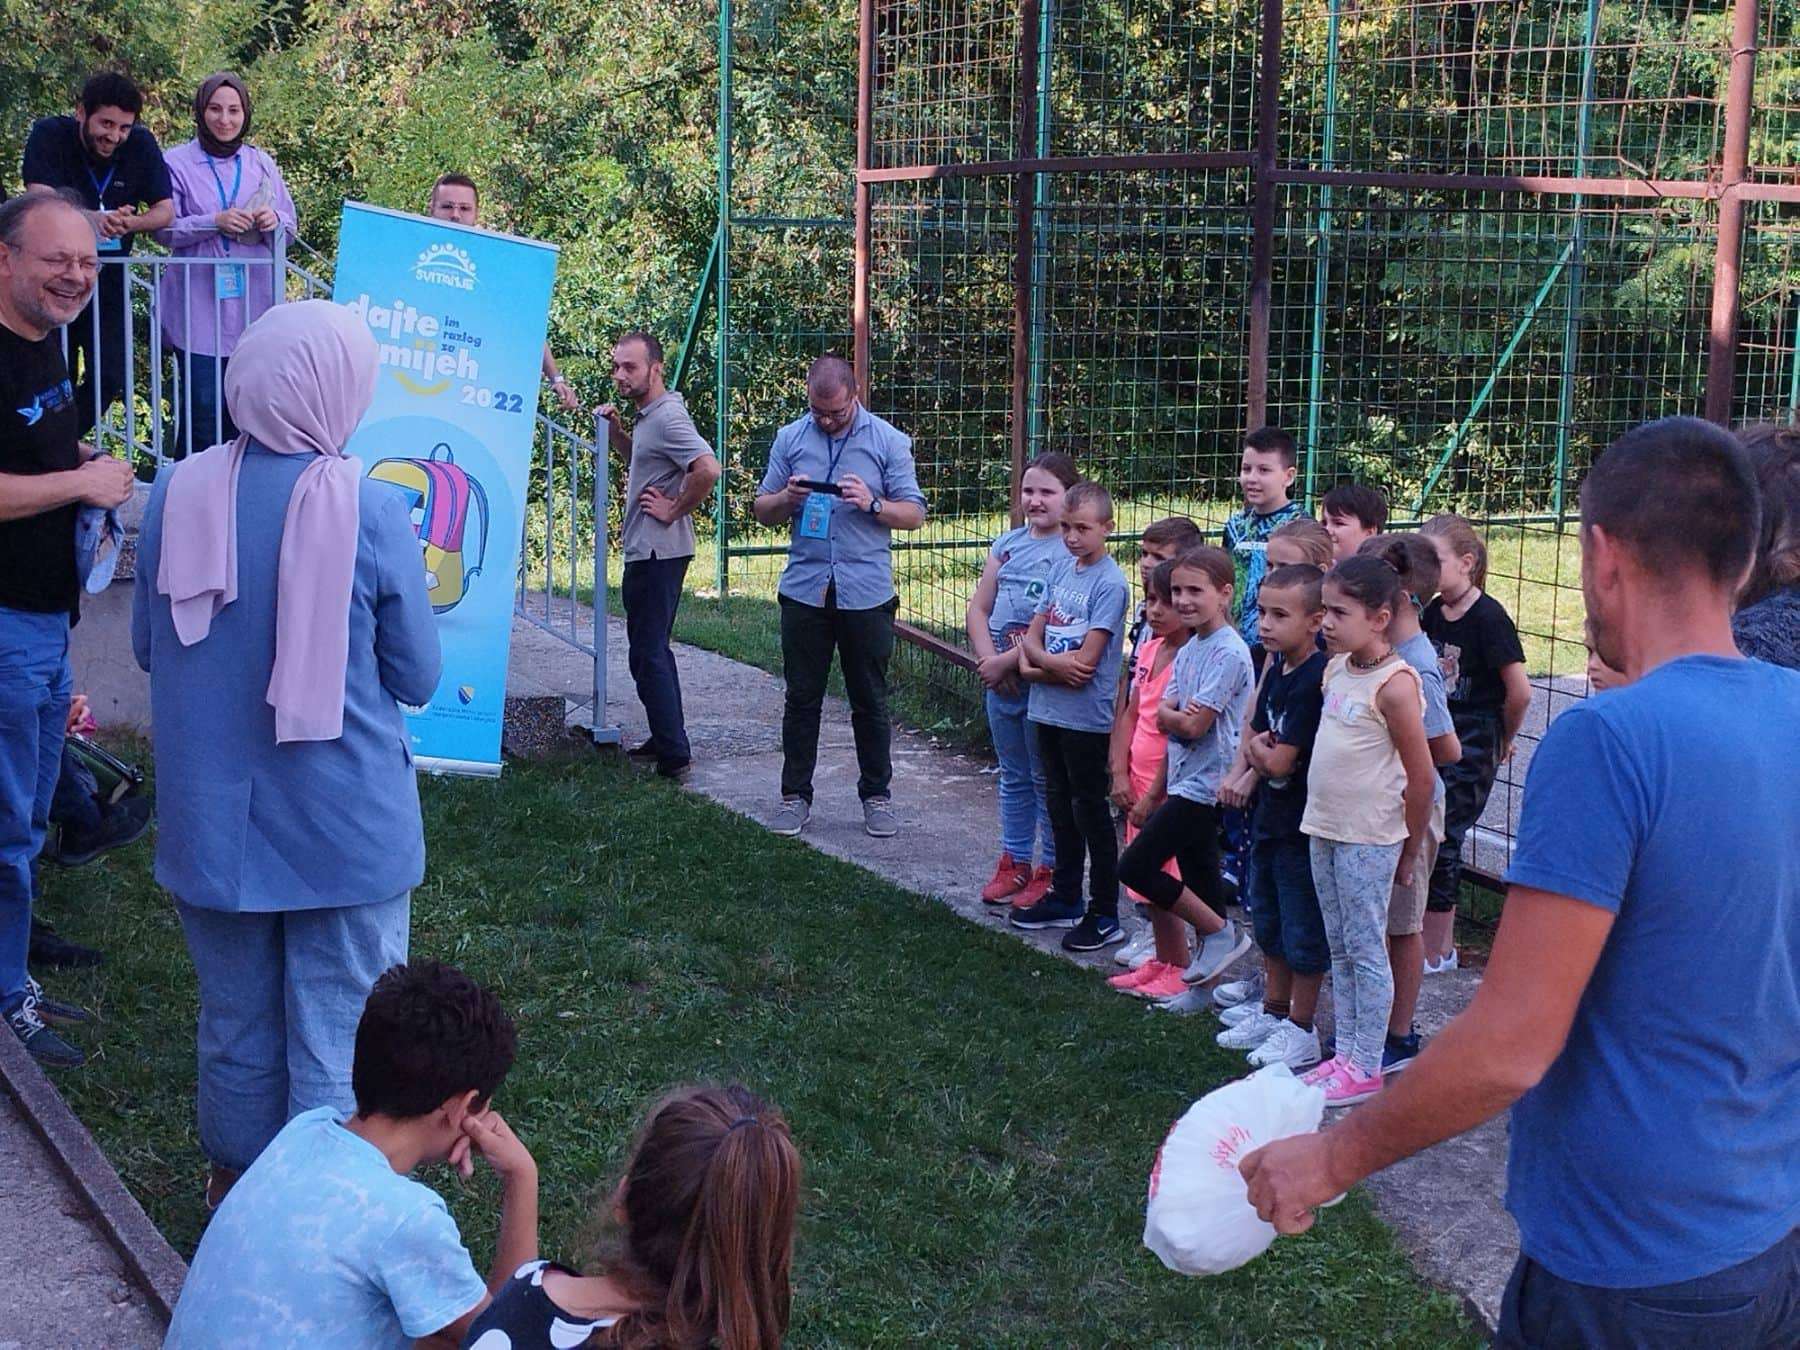 Udruženje "Svitanje" iz Sarajevo uručilo školske torbe i kompletan pribor učenicima povratnicima u Zvorniku (FOTO)